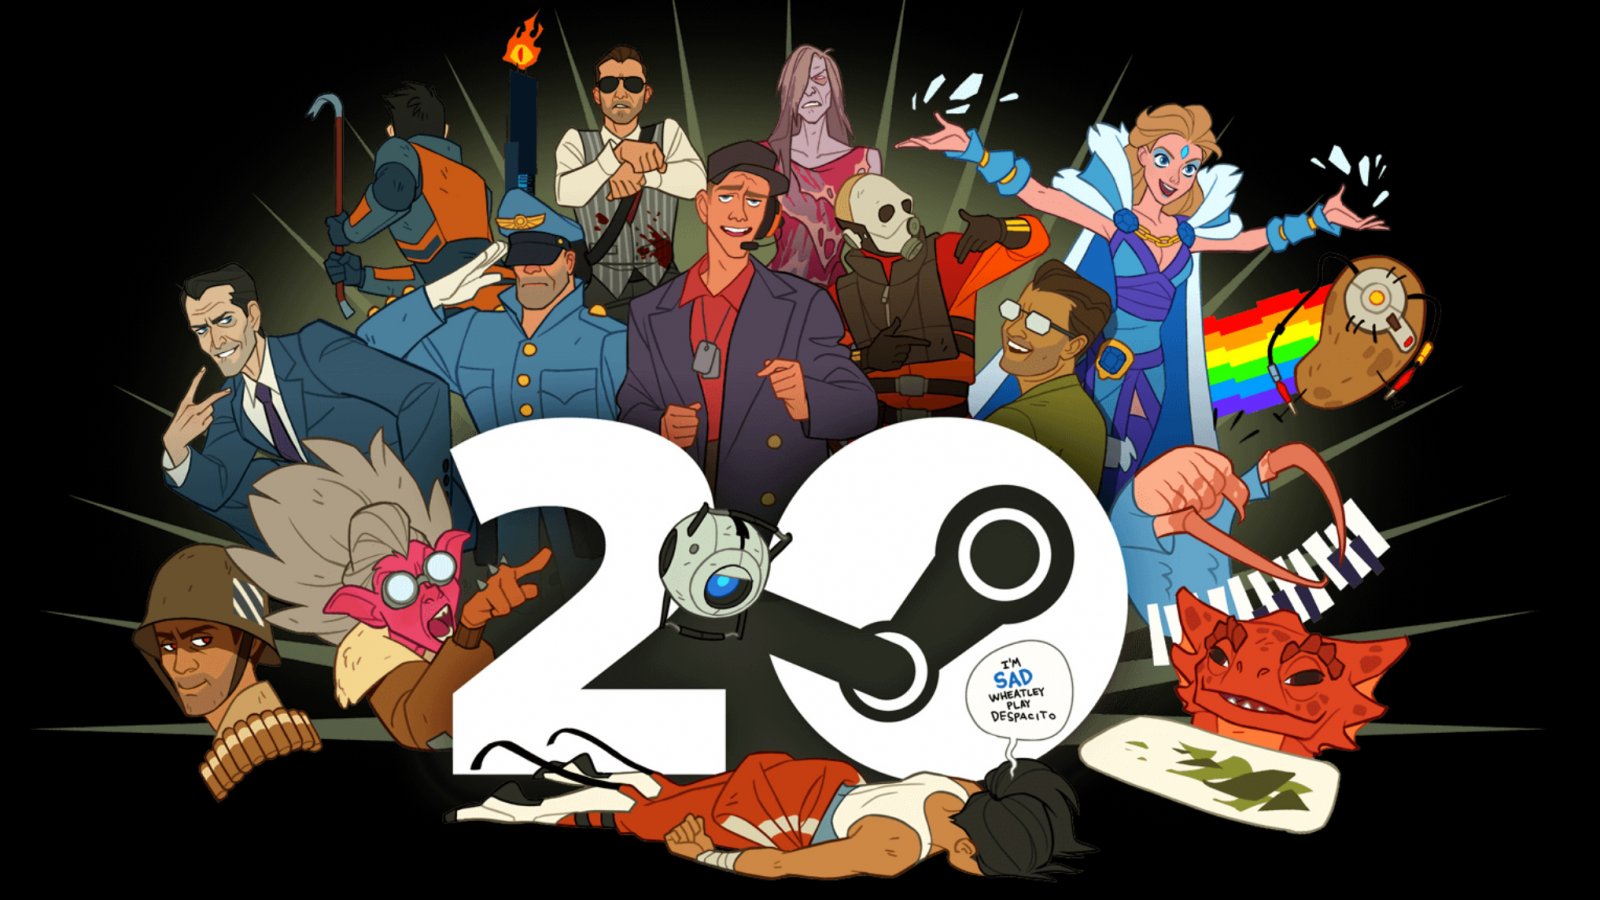 Steam festeggia i suoi venti anni con una pagina speciale piena di storia e sconti